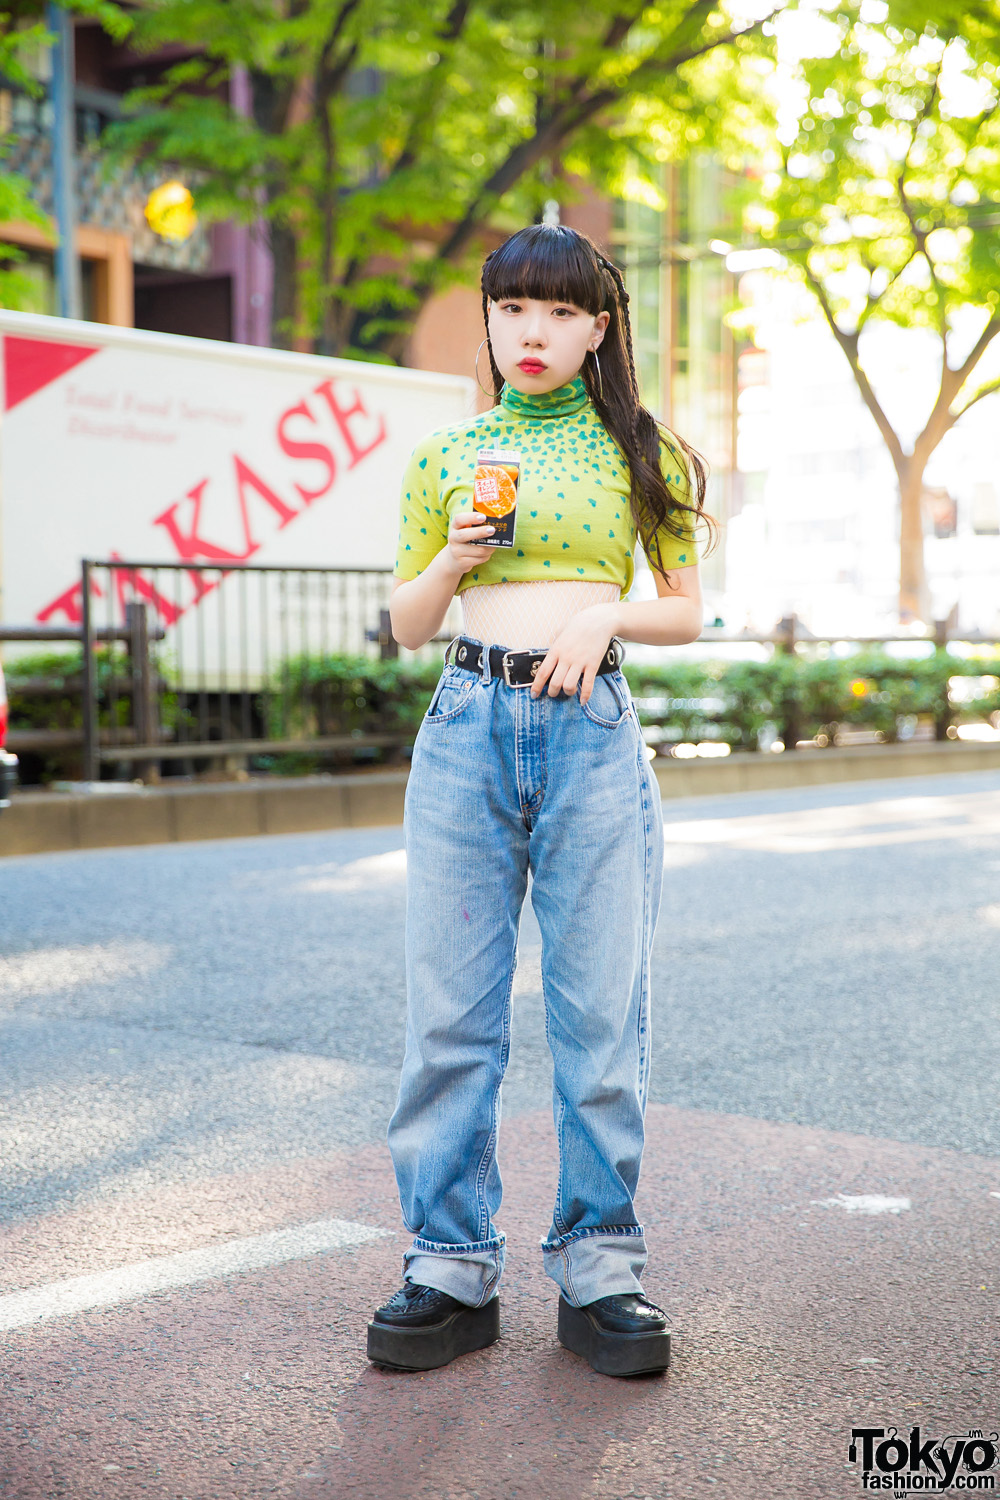 Harajuku Girl in Vintage Streetwear Style